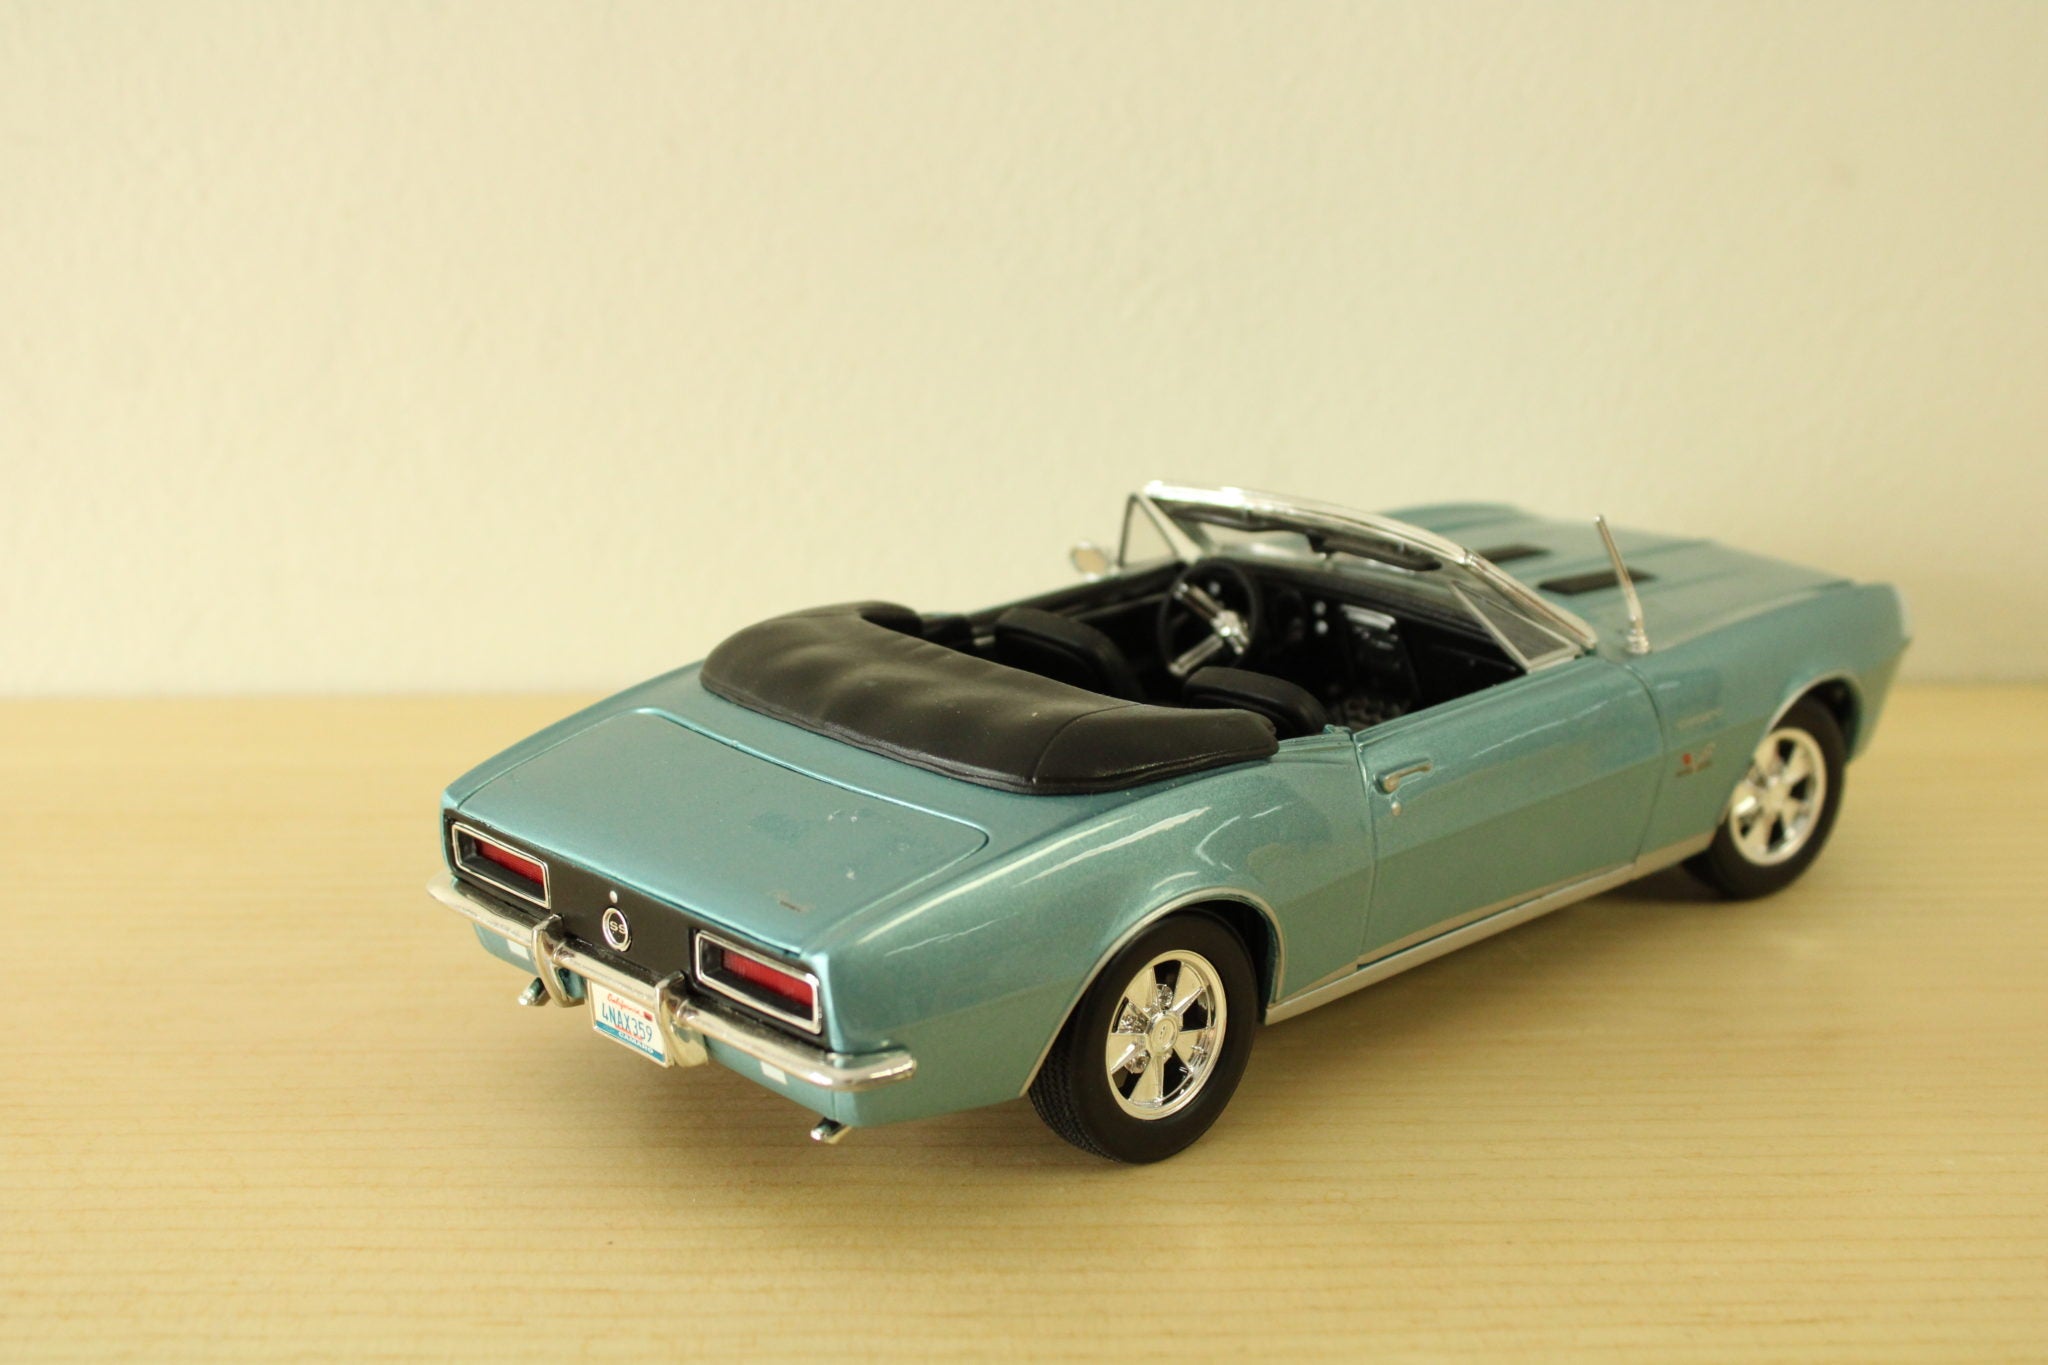 Maisto 1/18 Scale 46629 - 1967 Chevrolet Camaro SS 396 Convertible Blue